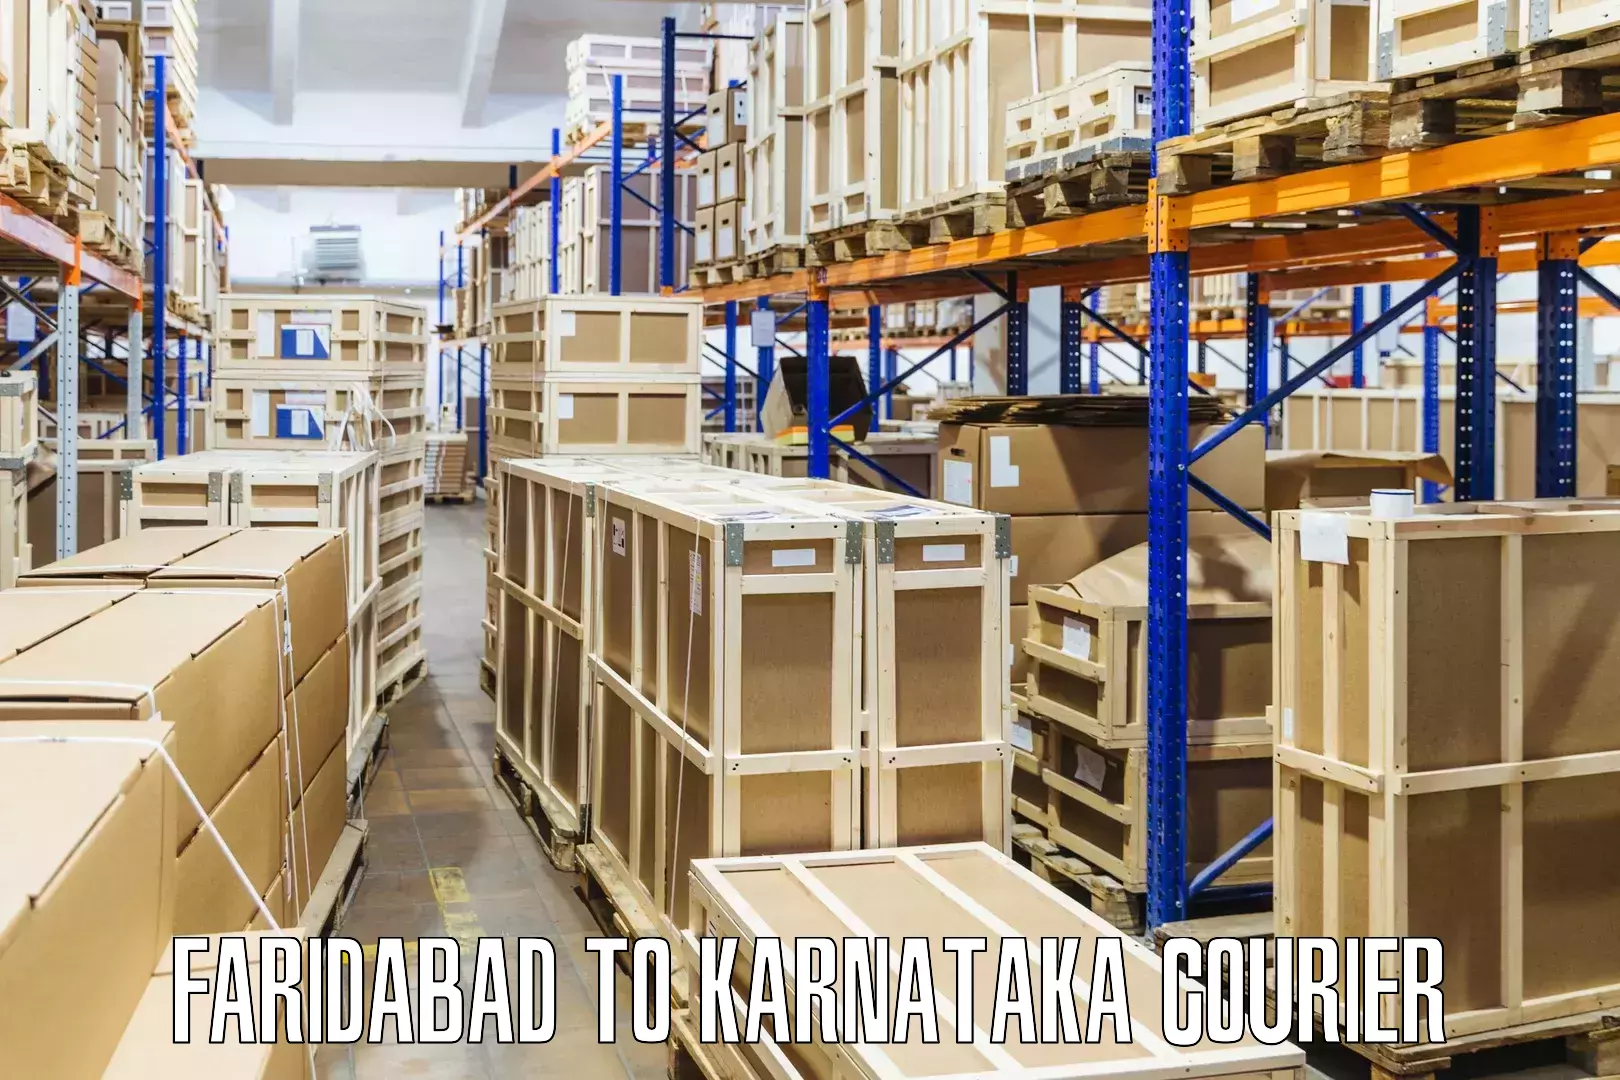 Door-to-door shipment Faridabad to Karnataka